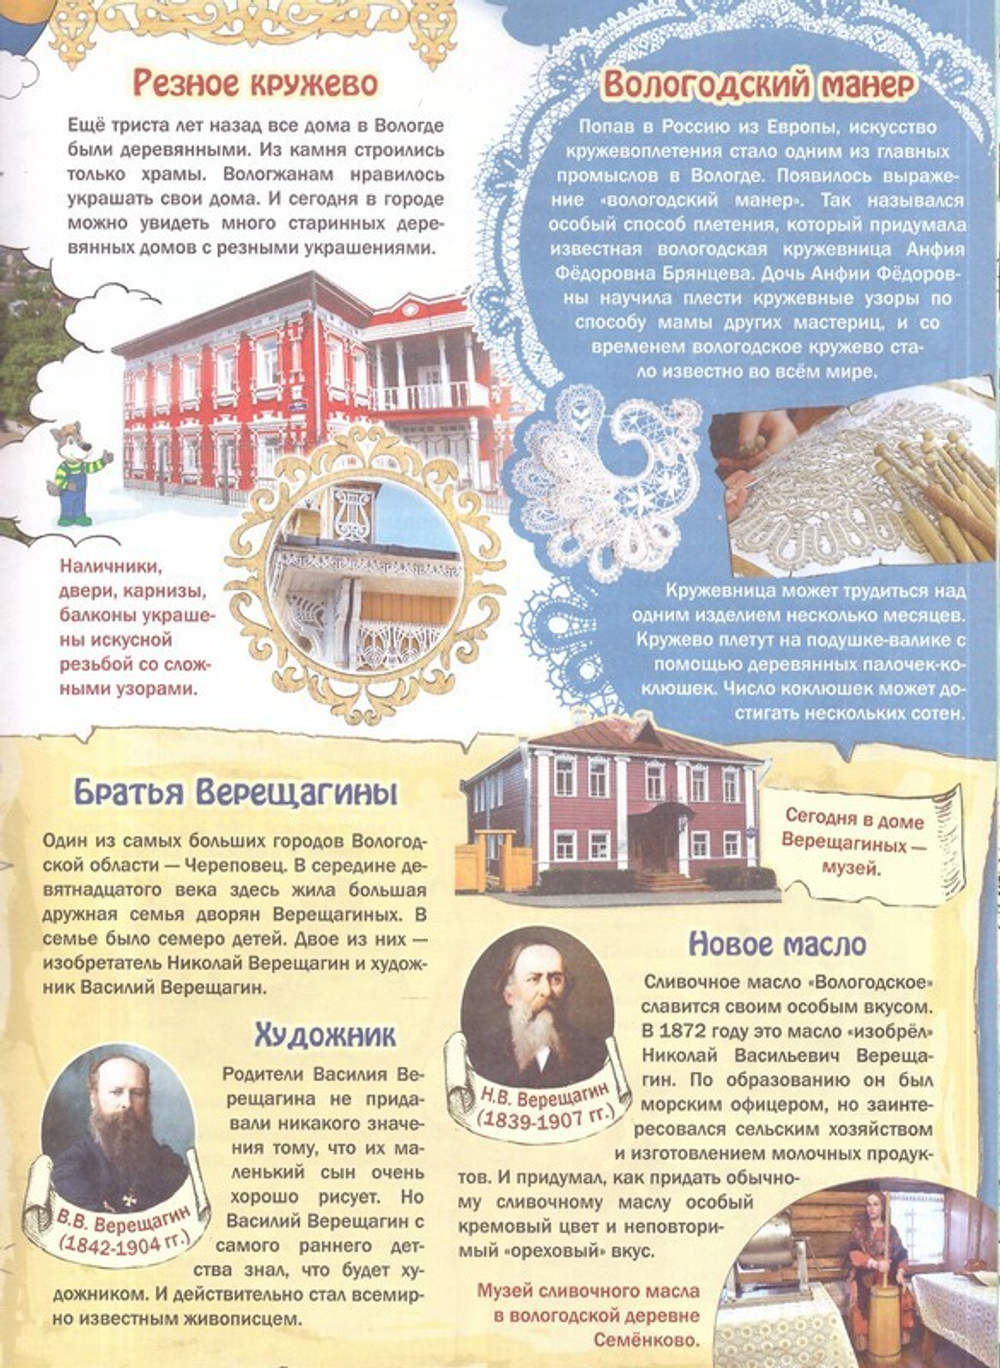 Журнал "Шишкин лес" № 12 Декабрь 2022 г.